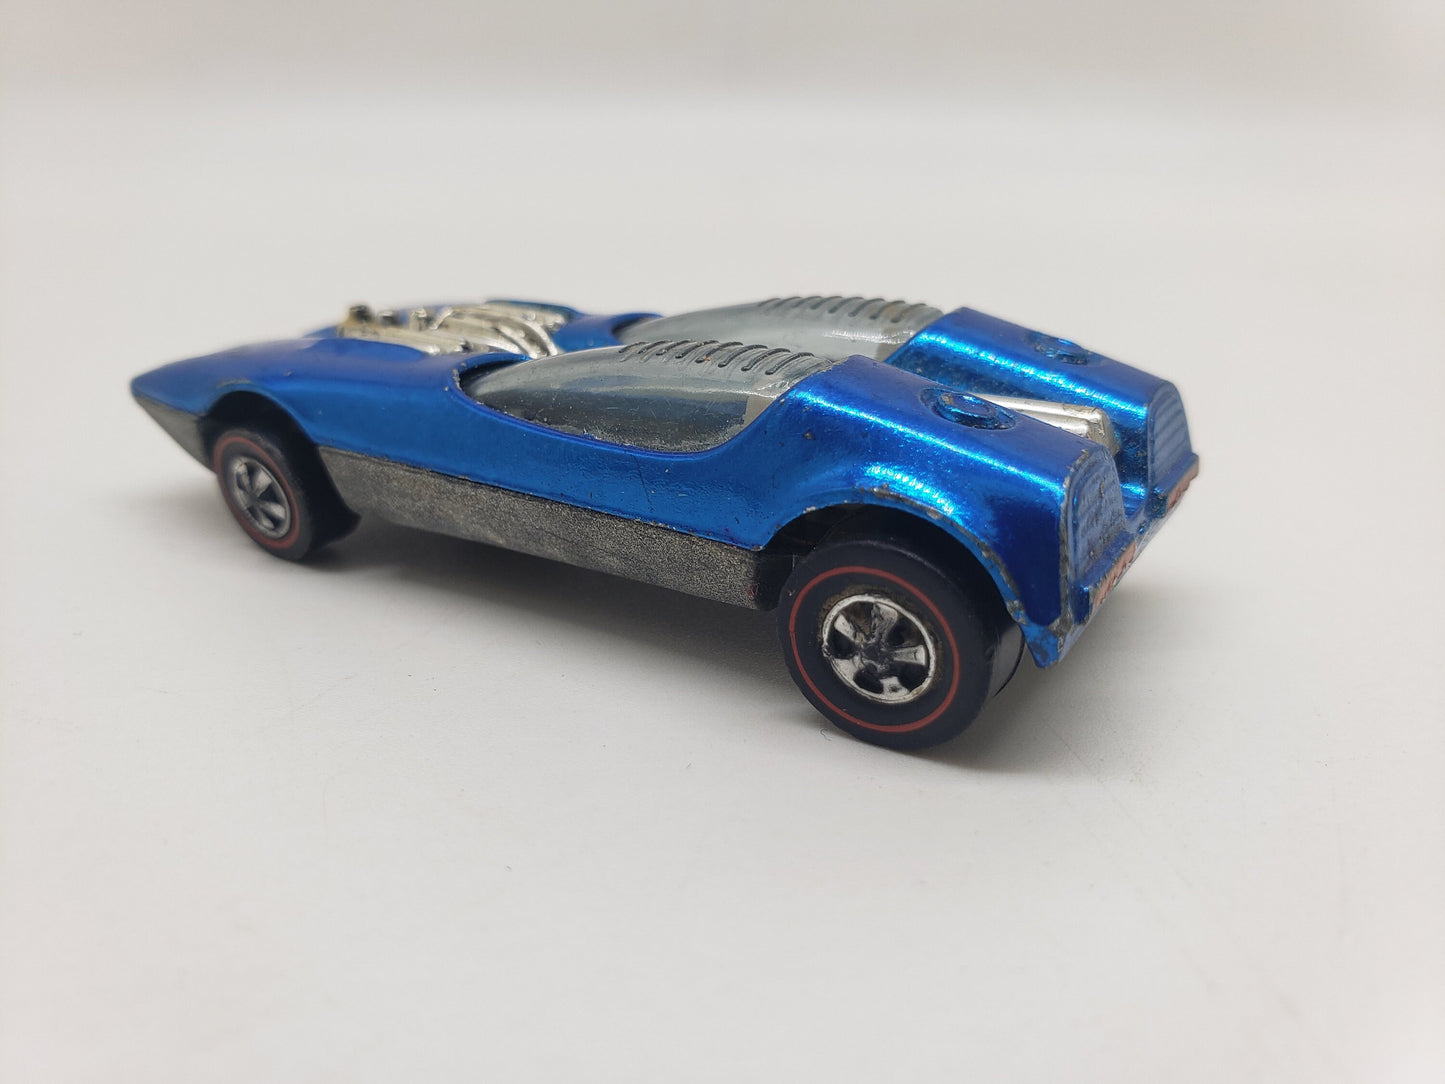 Redline Hot Wheels Splittin Image Blue - 1960s Toy - Vintage Diecast Metal Toy Car - Vintage Hot Wheels